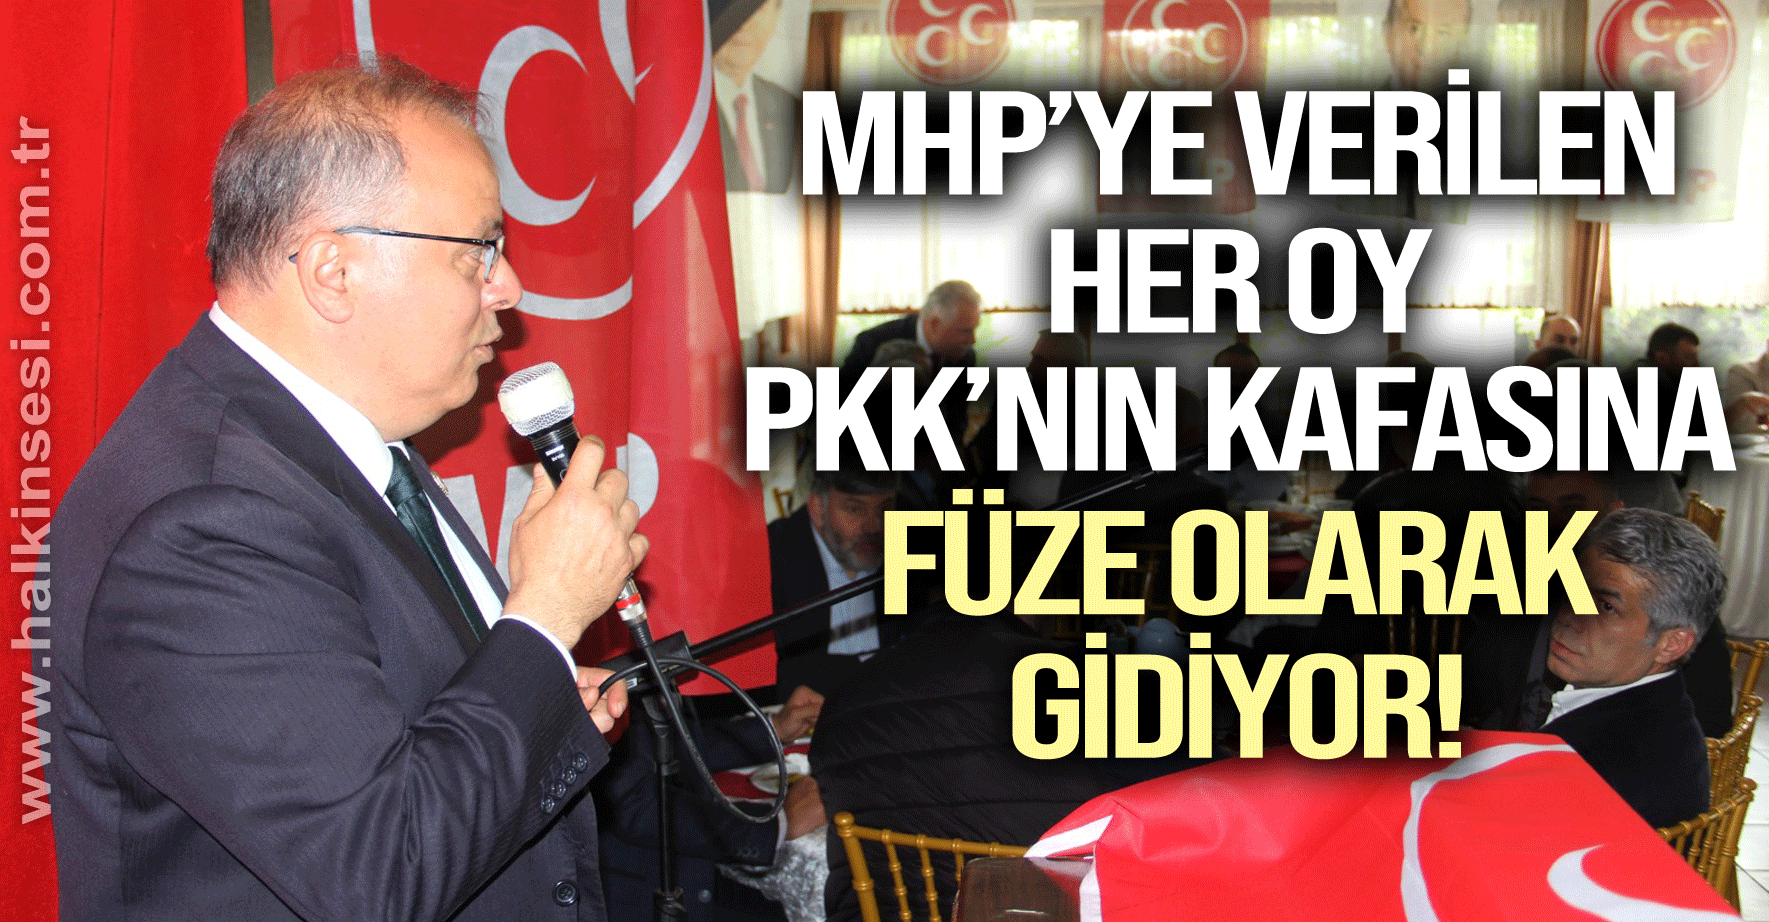 “MHP’ye verilen her oy PKK’nın kafasına füze olarak gidiyor”